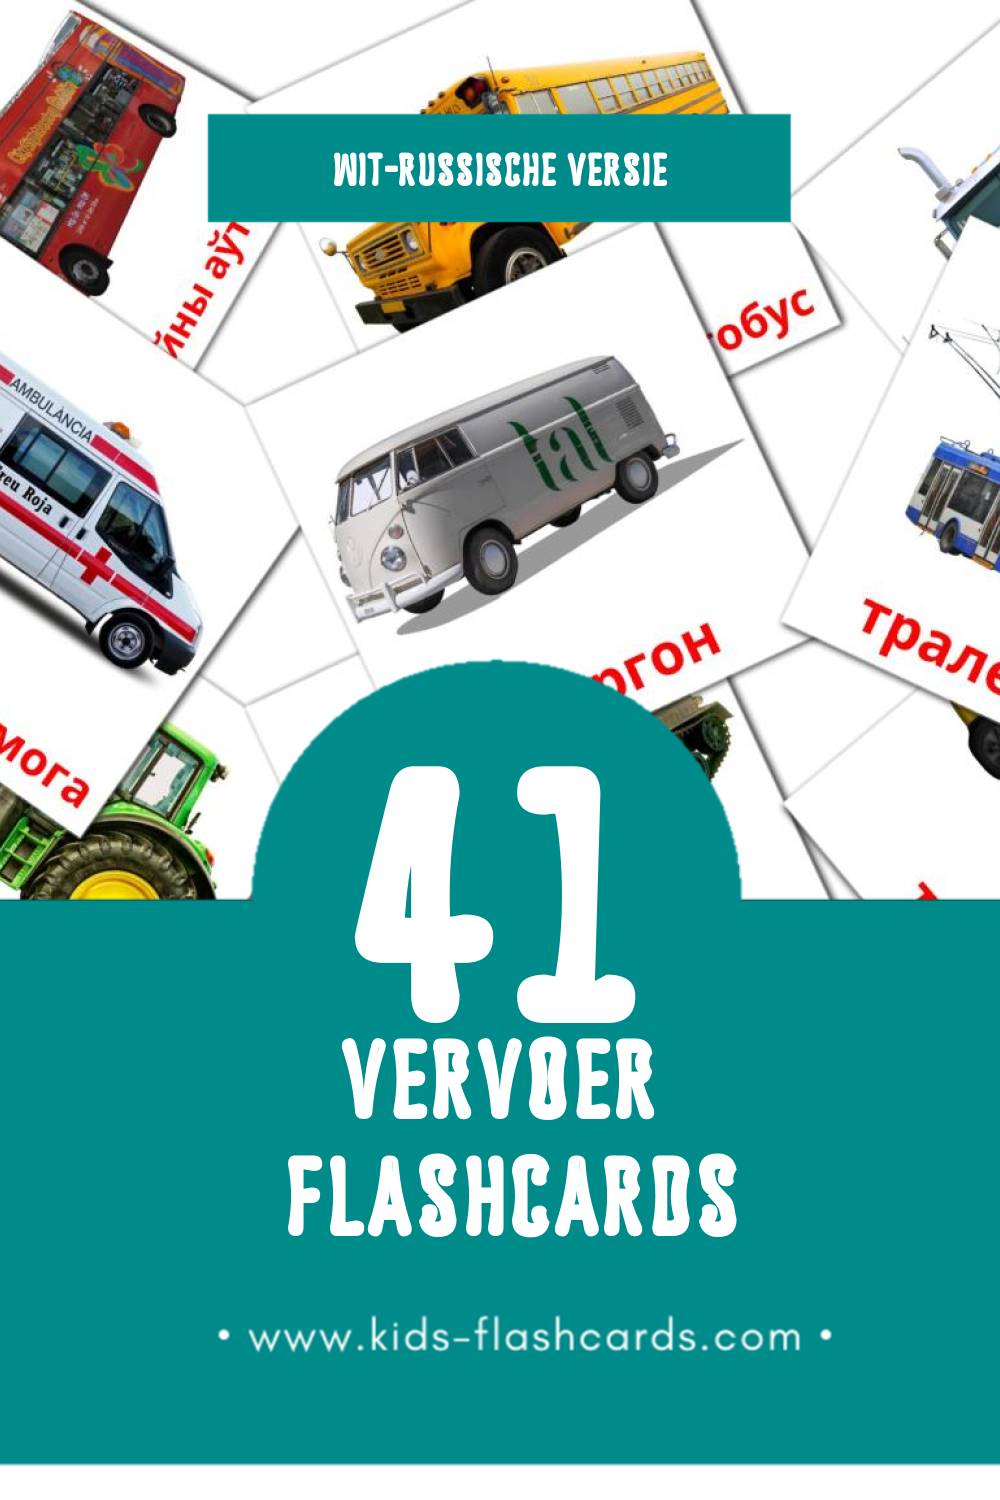 Visuele Транспарт Flashcards voor Kleuters (41 kaarten in het Wit-russisch)